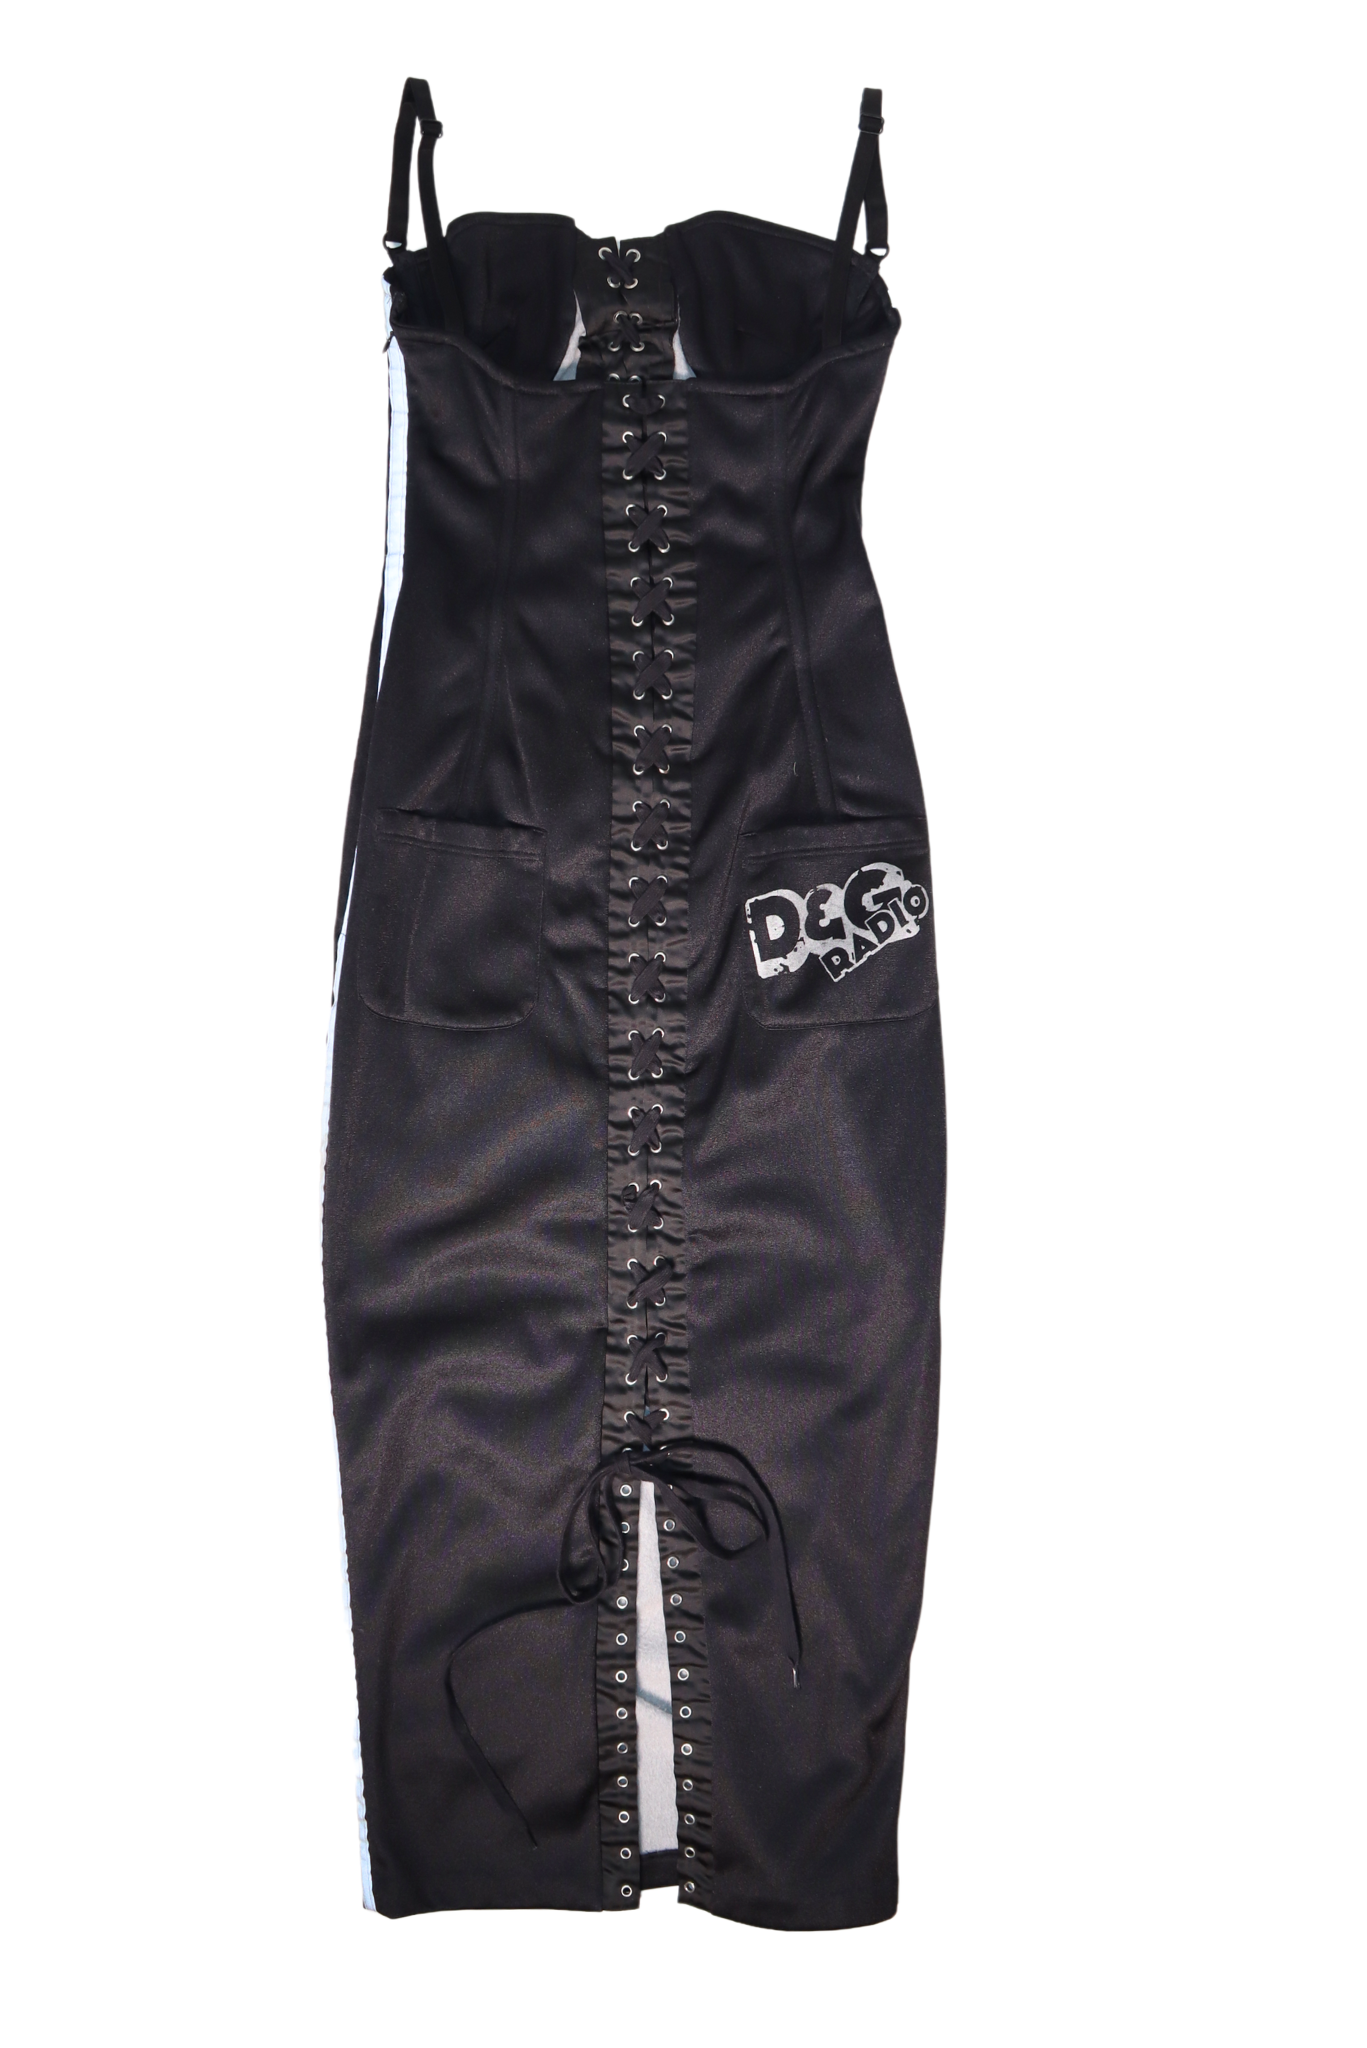 Dolce & Gabbana Corset Lace Up 3M Dress